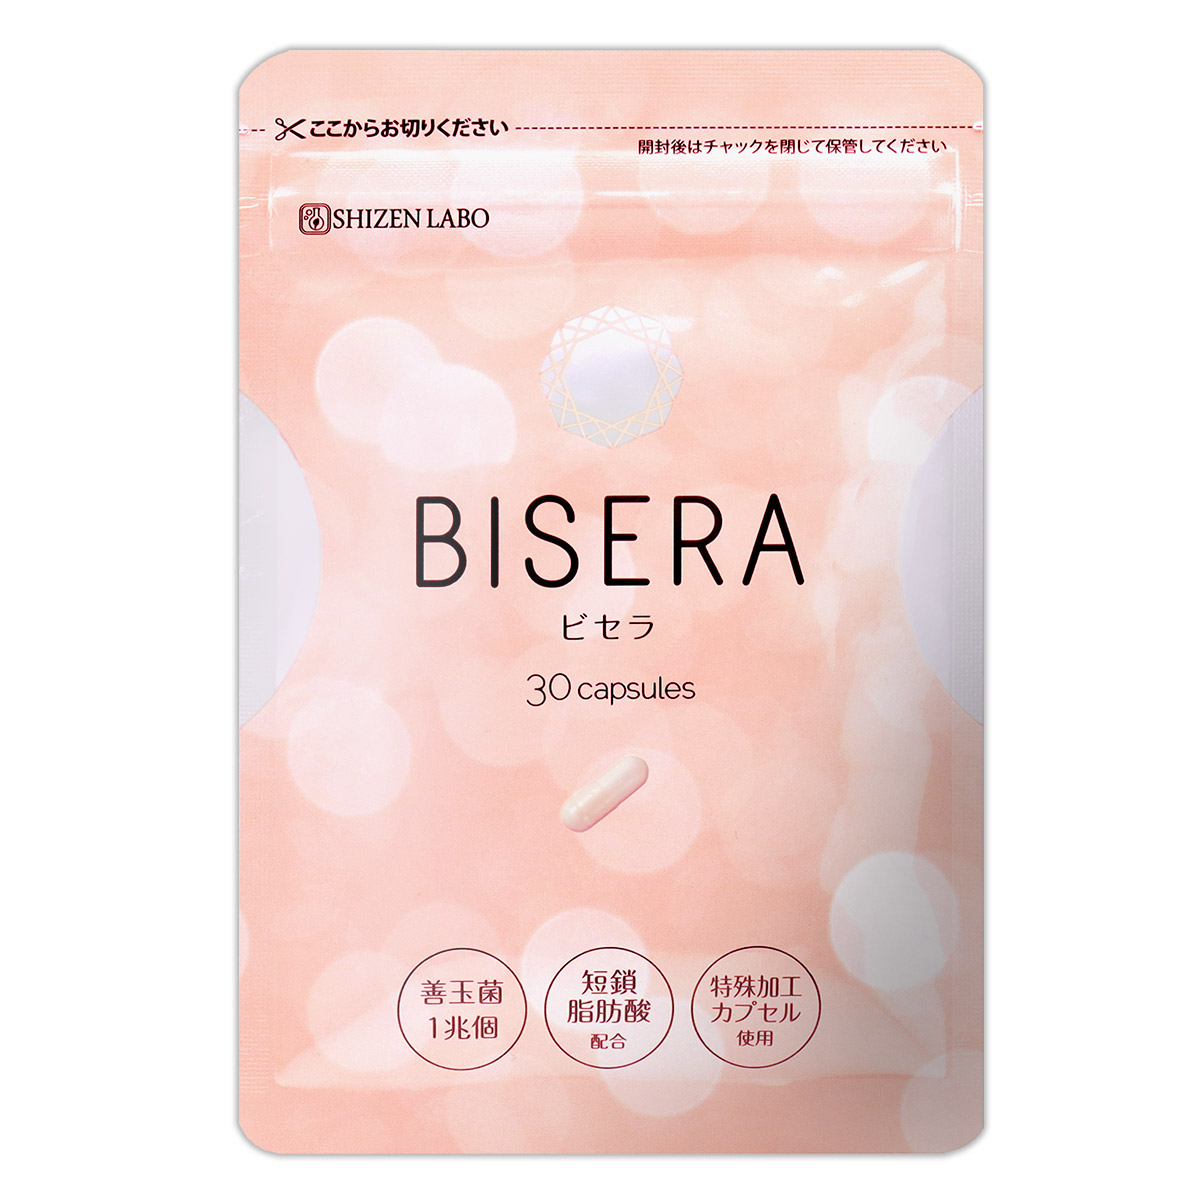 ダイエット食品BISERA ビセラ 30粒 14袋セット - ダイエット食品